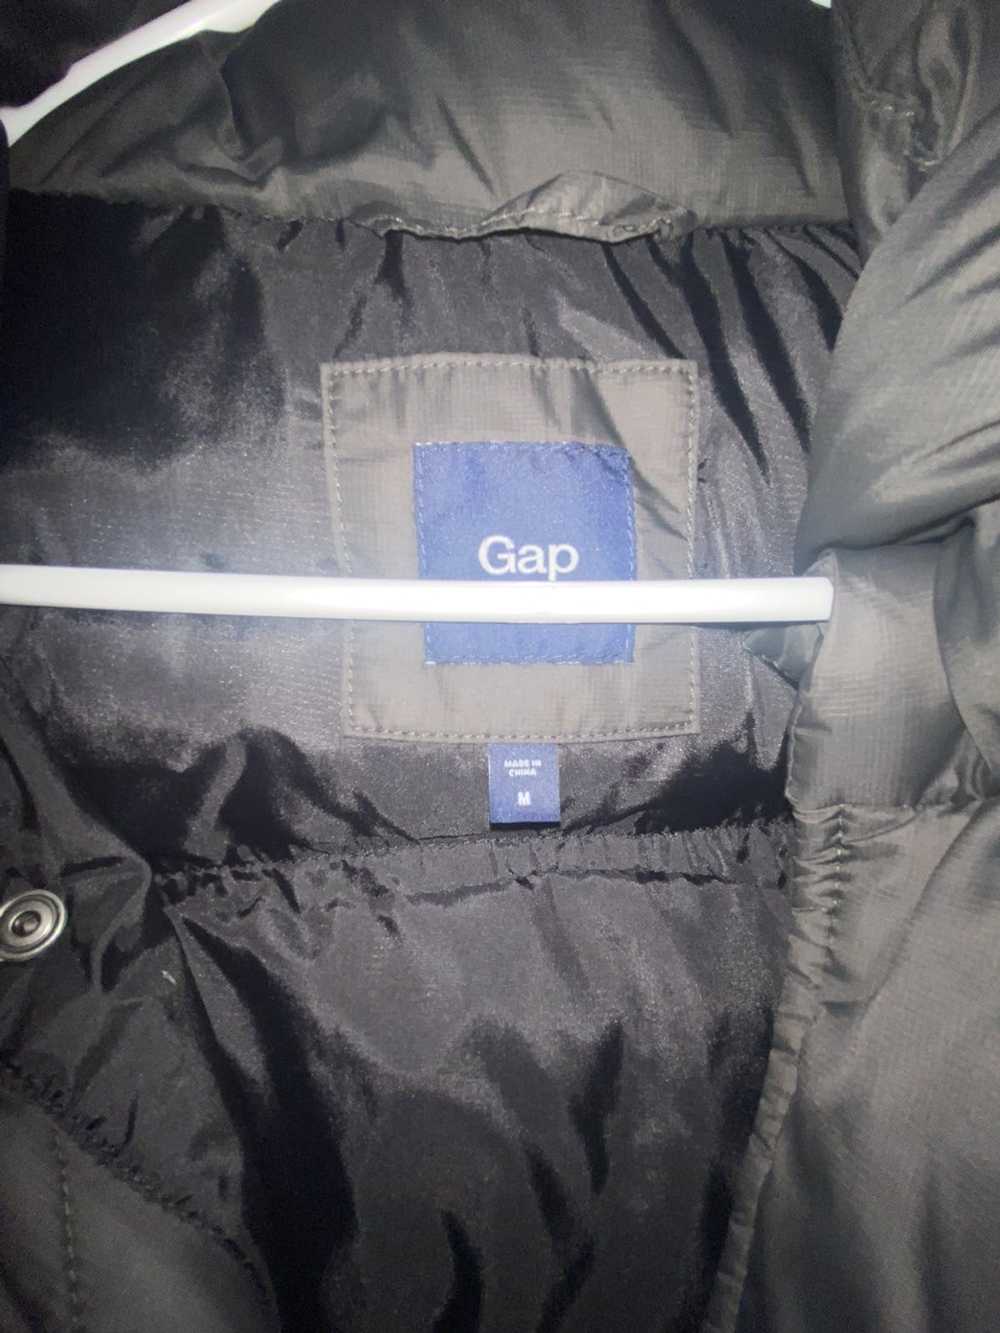 Gap Gap Puffer Jacket - image 3